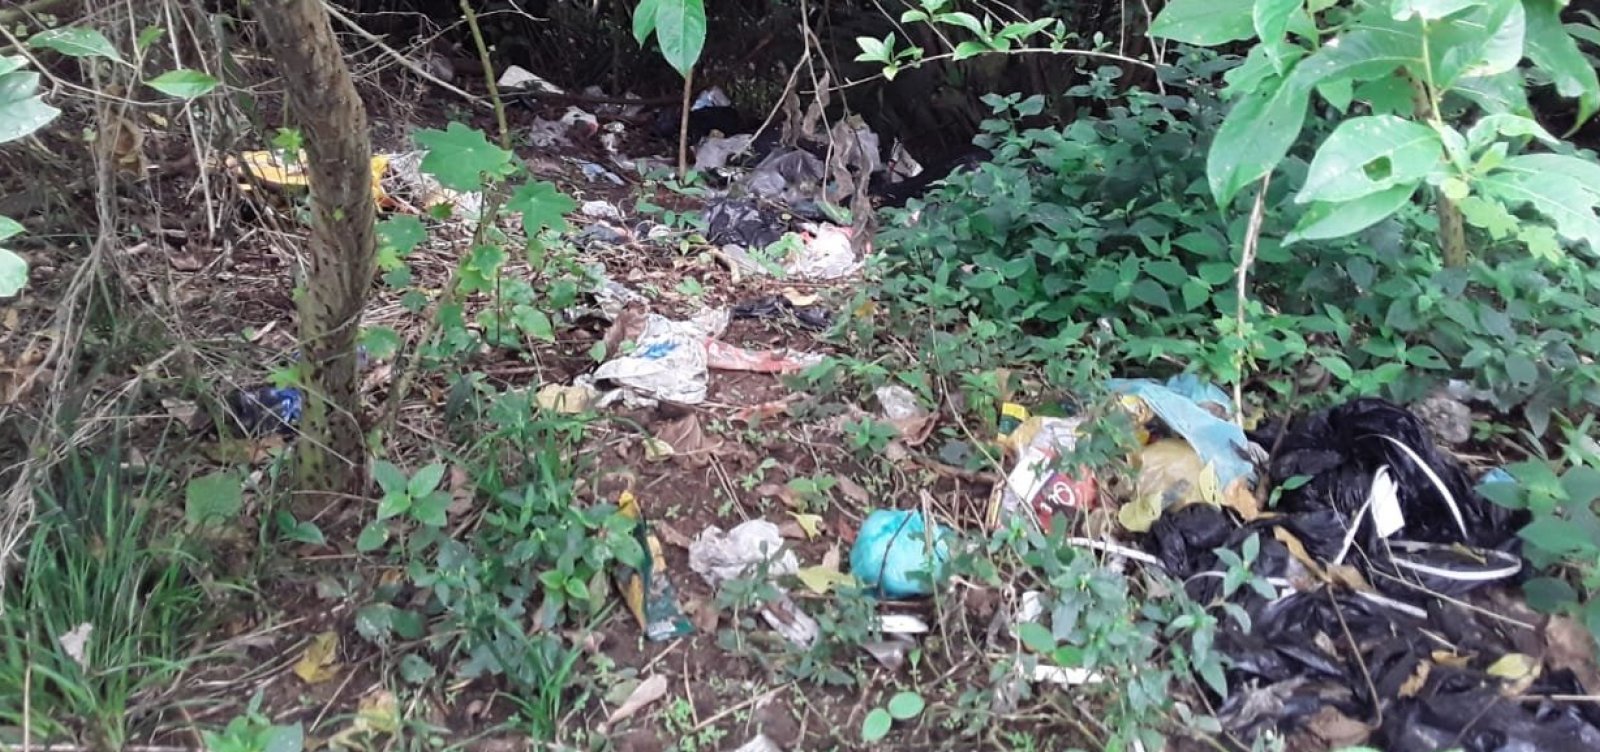 Ocupações irregulares geram acúmulo de lixo no Parque de Pituaçu; secretaria não dá resposta